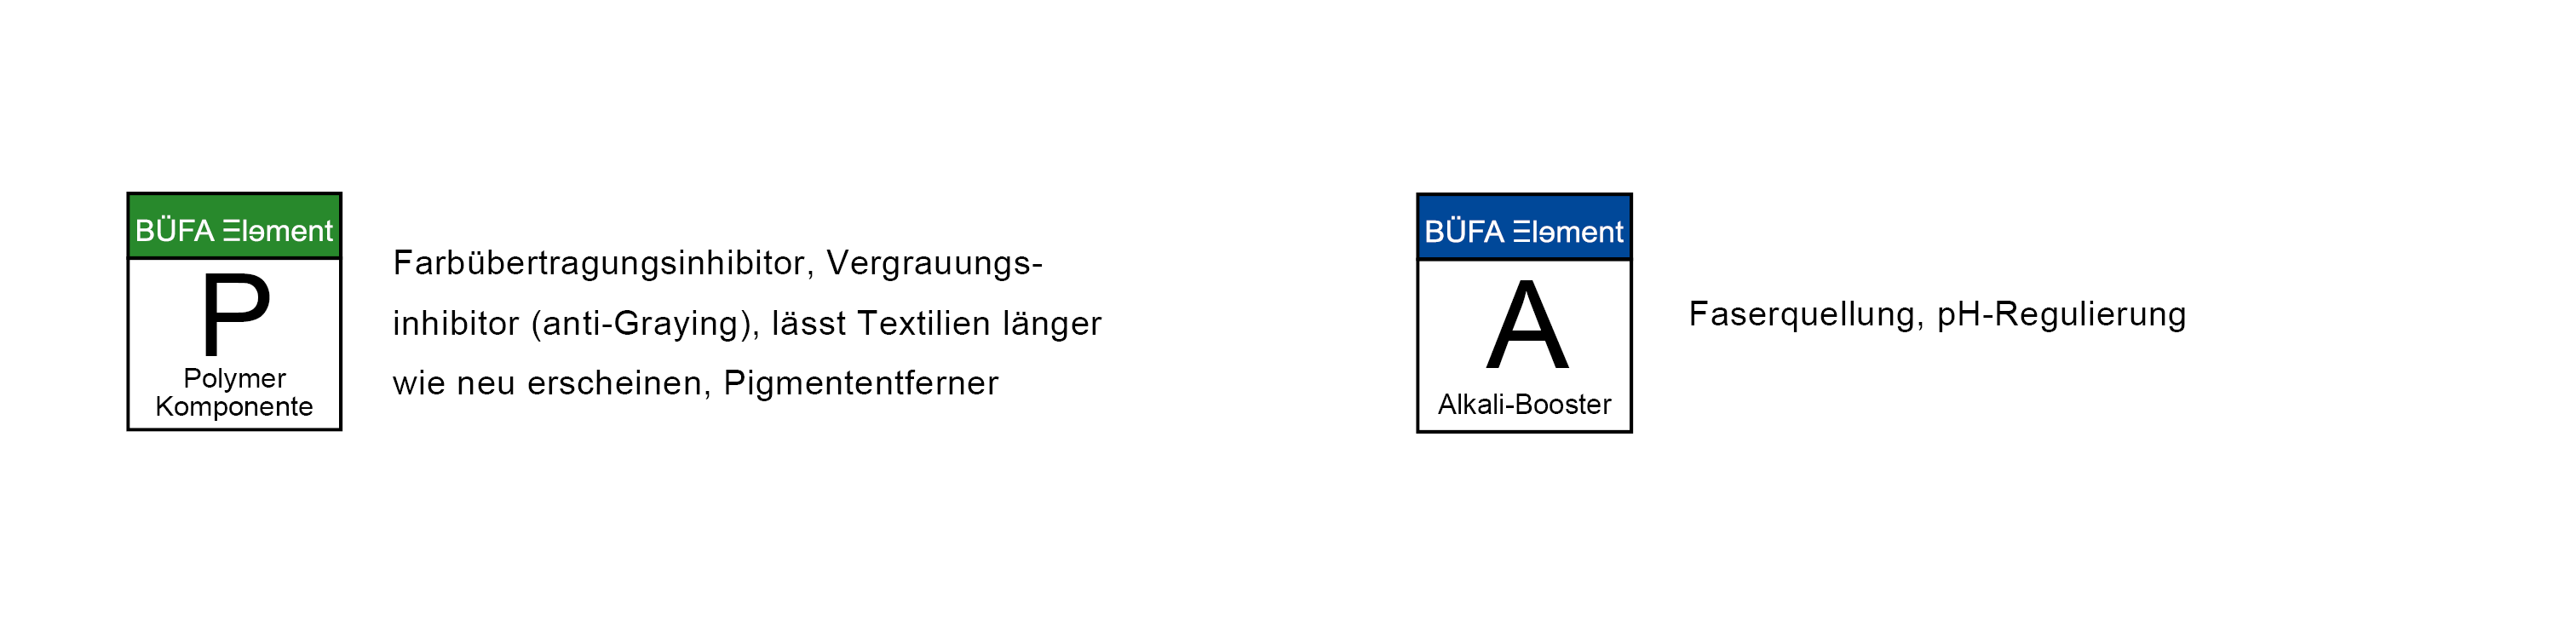 BÜFA Elements P und A